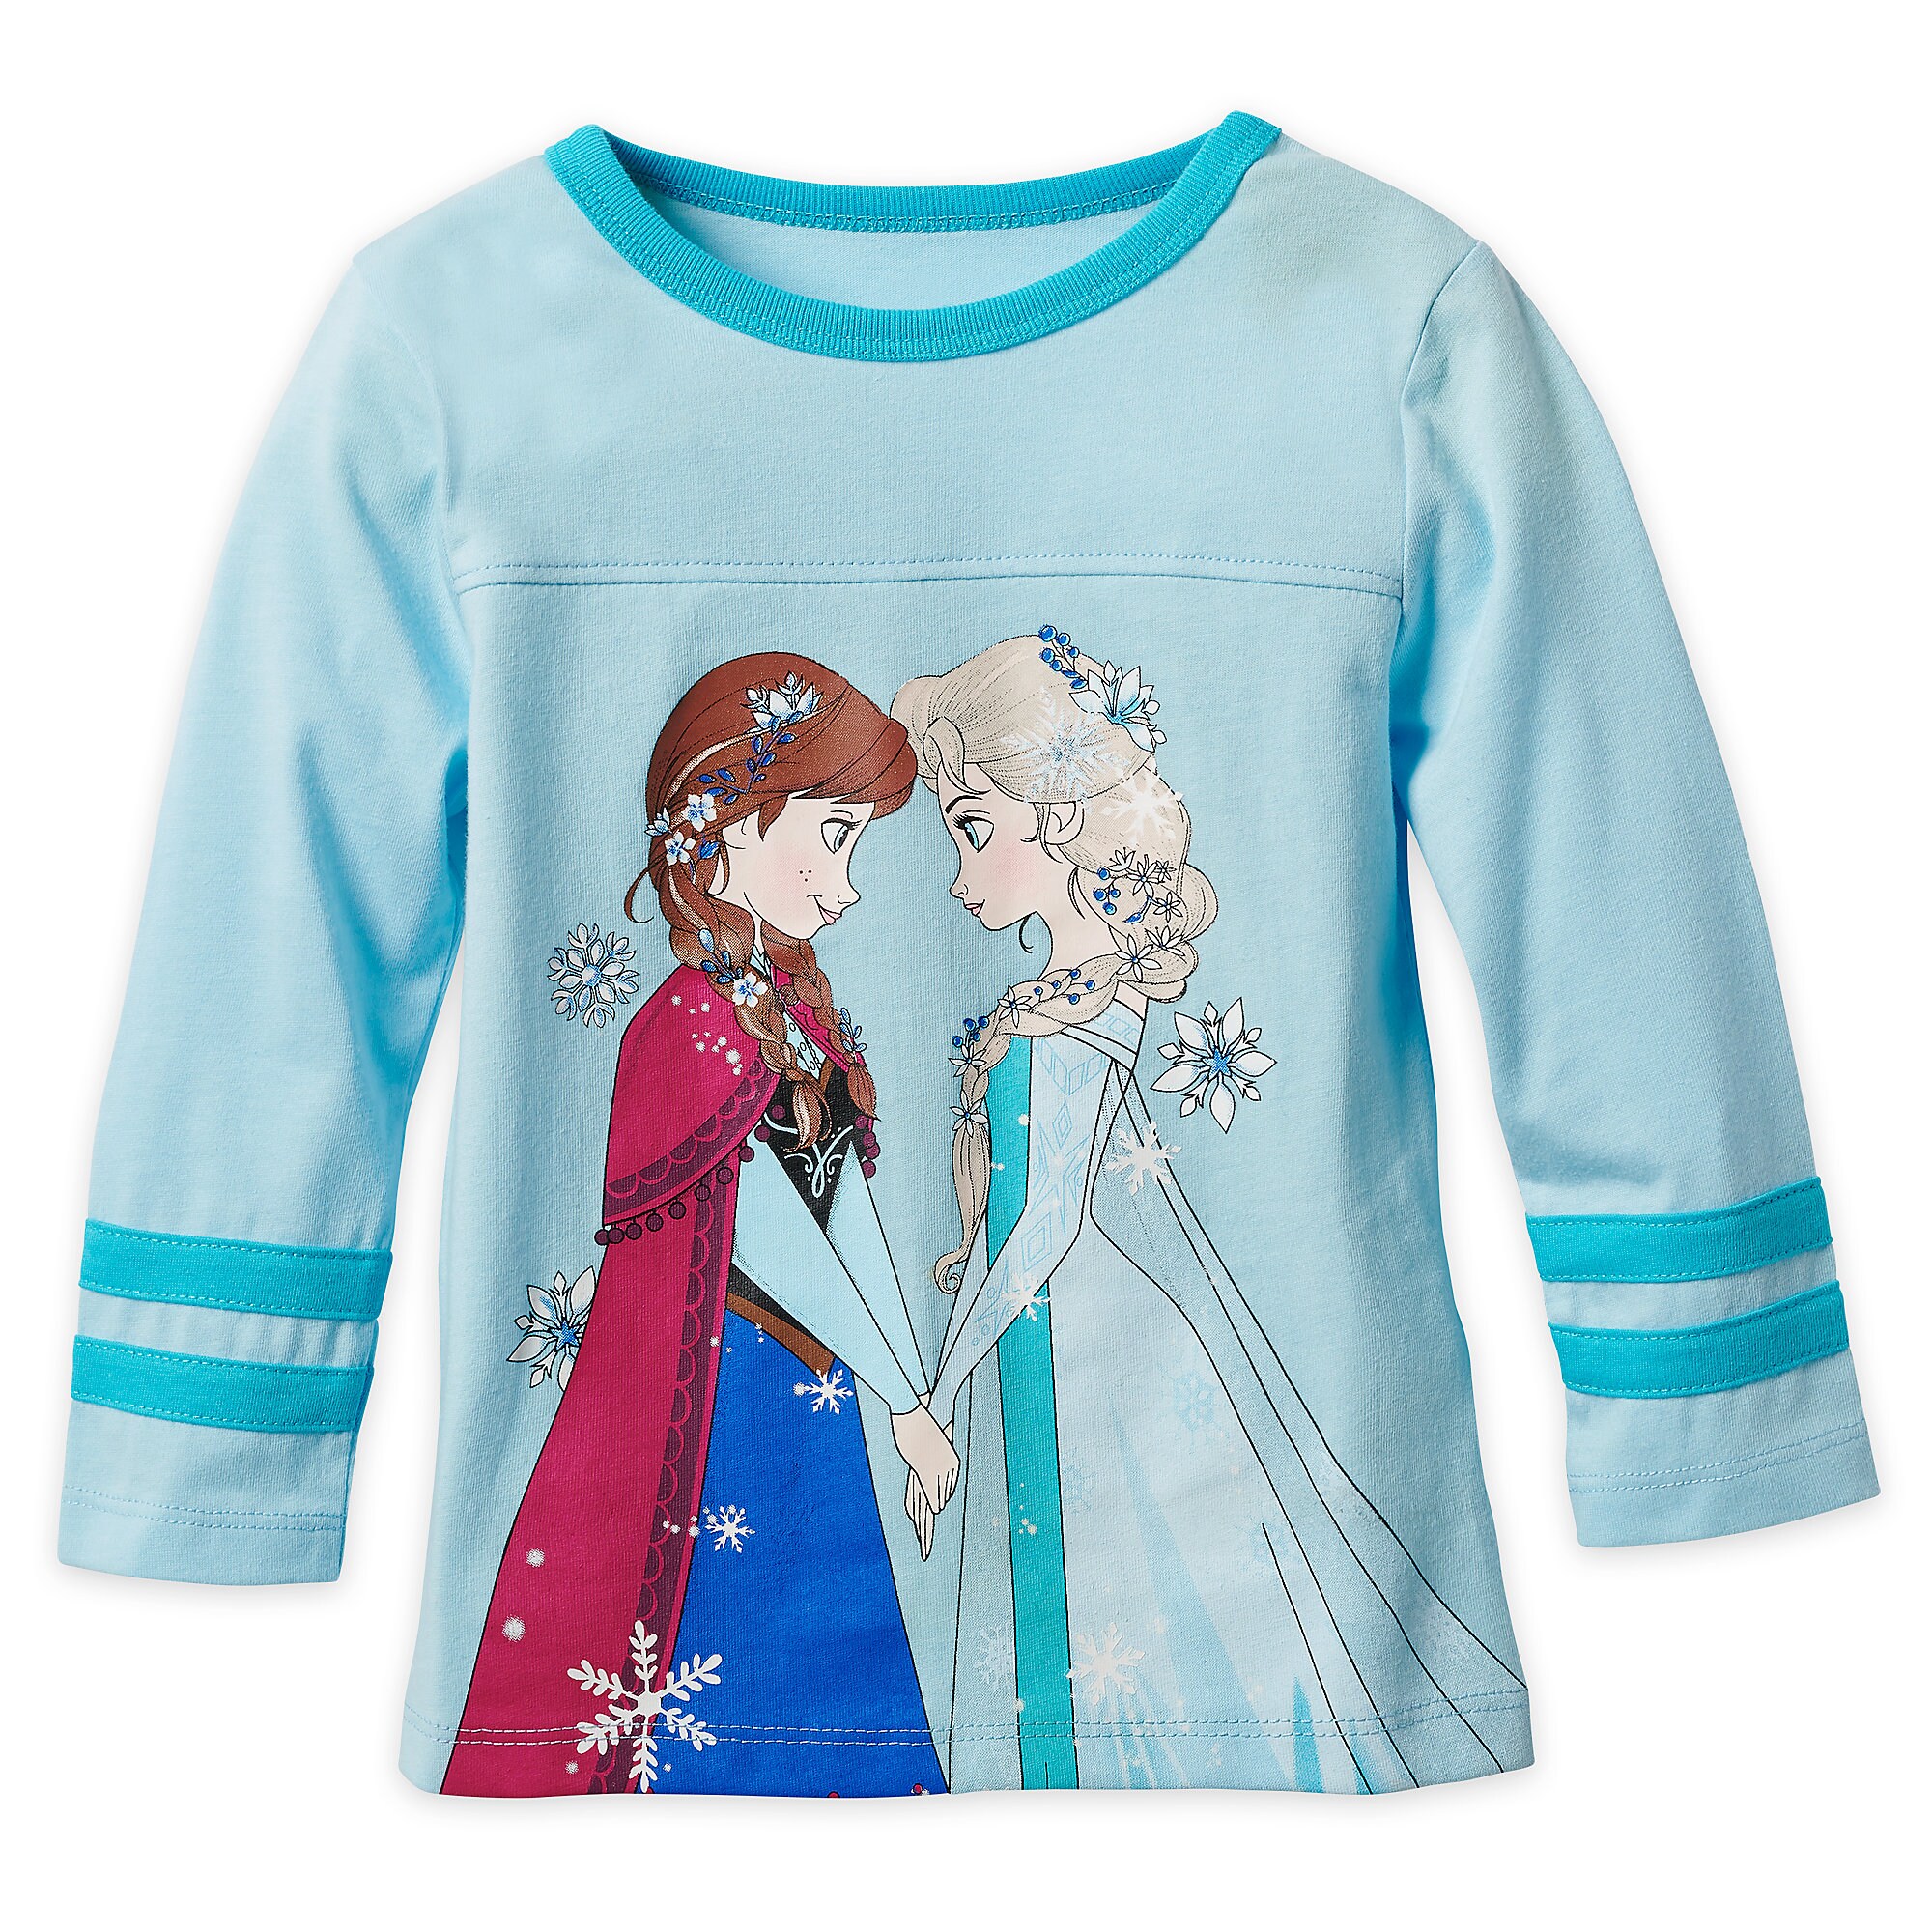 Frozen Long Sleeve T-Shirt for Girls